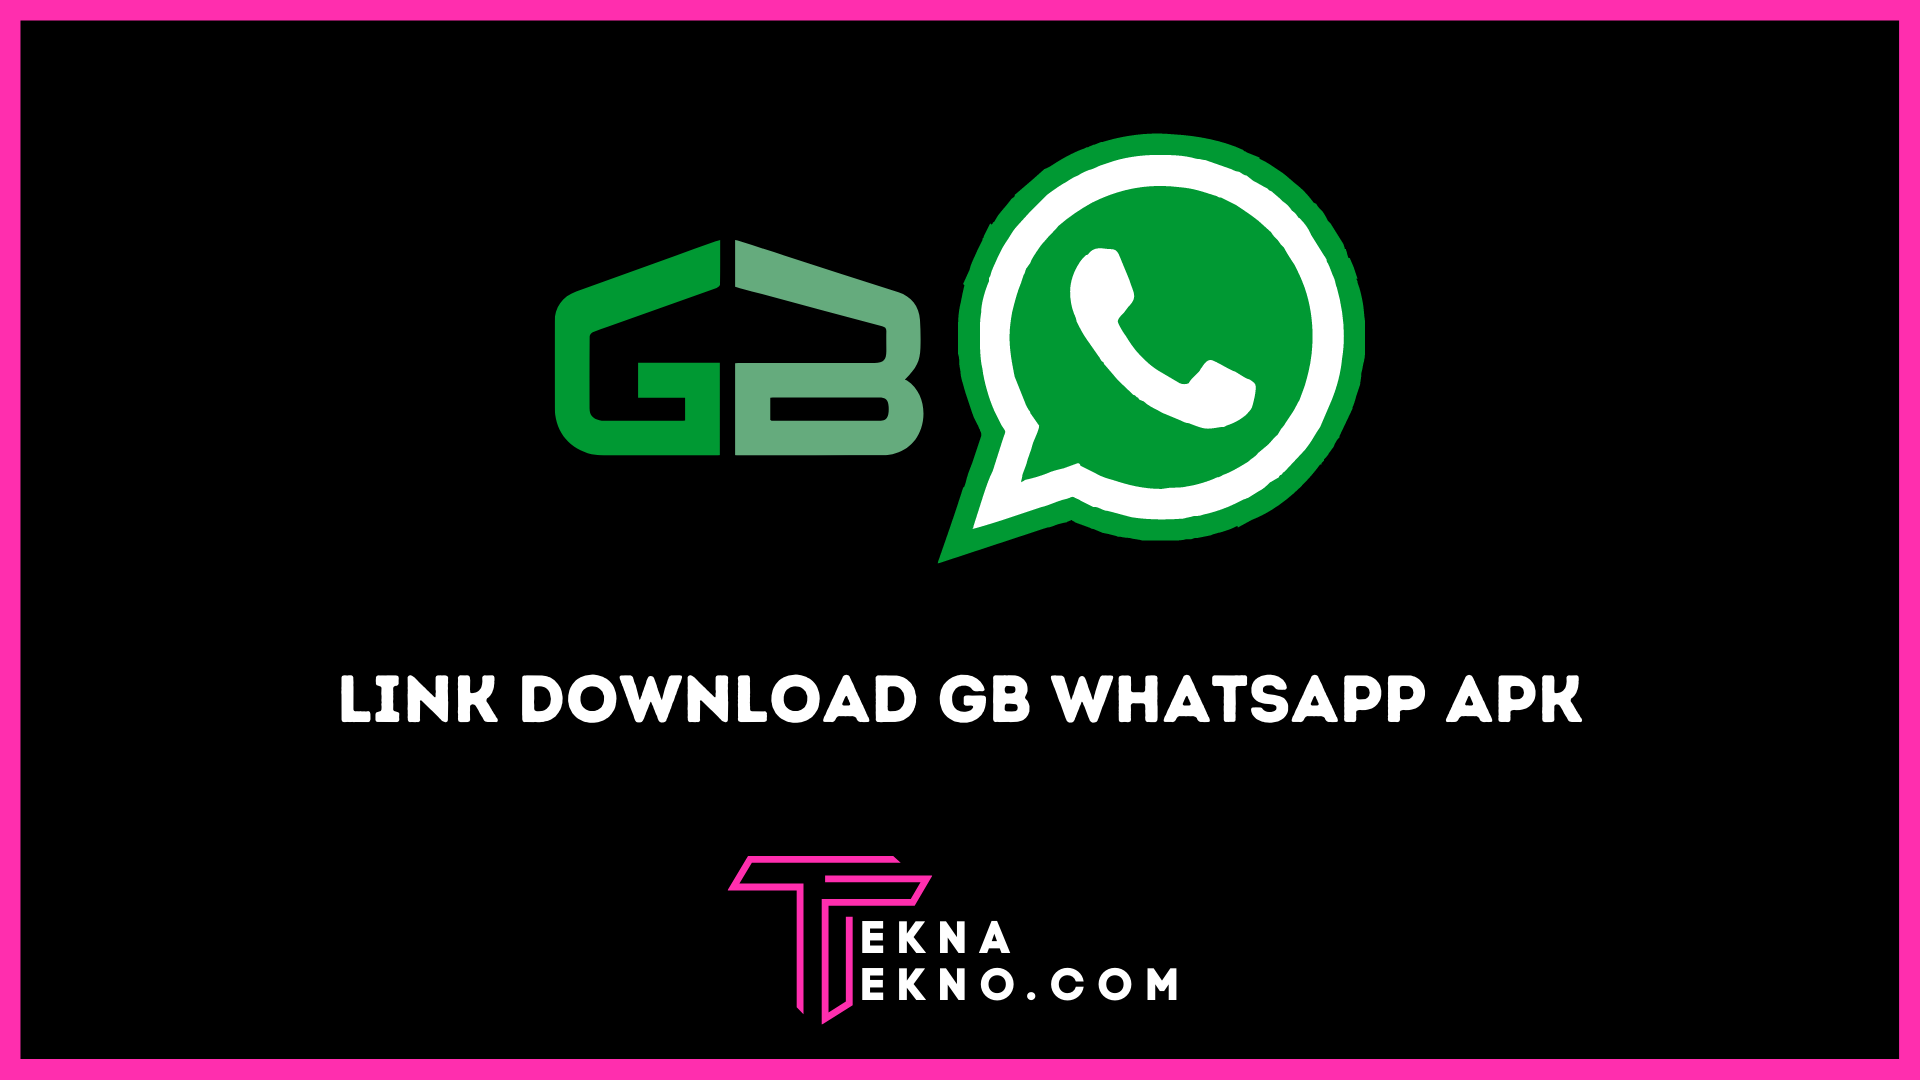 Download GB Whatsapp Apk (WA GB) Versi Terbaru Untuk Android